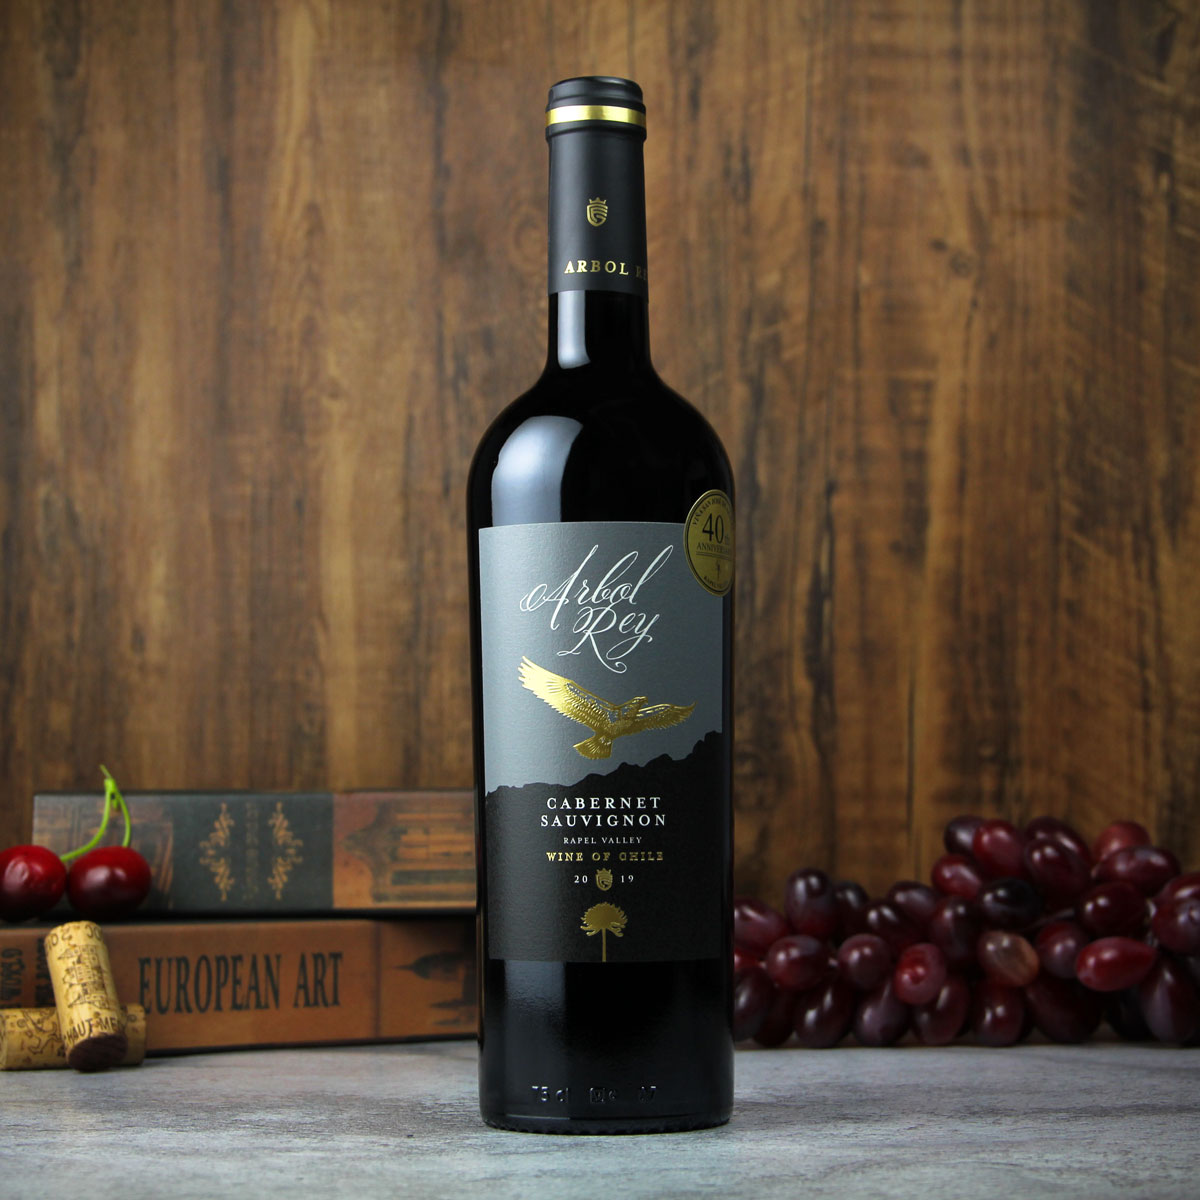 智利拉佩尔谷森林之王经典赤霞珠干红葡萄酒